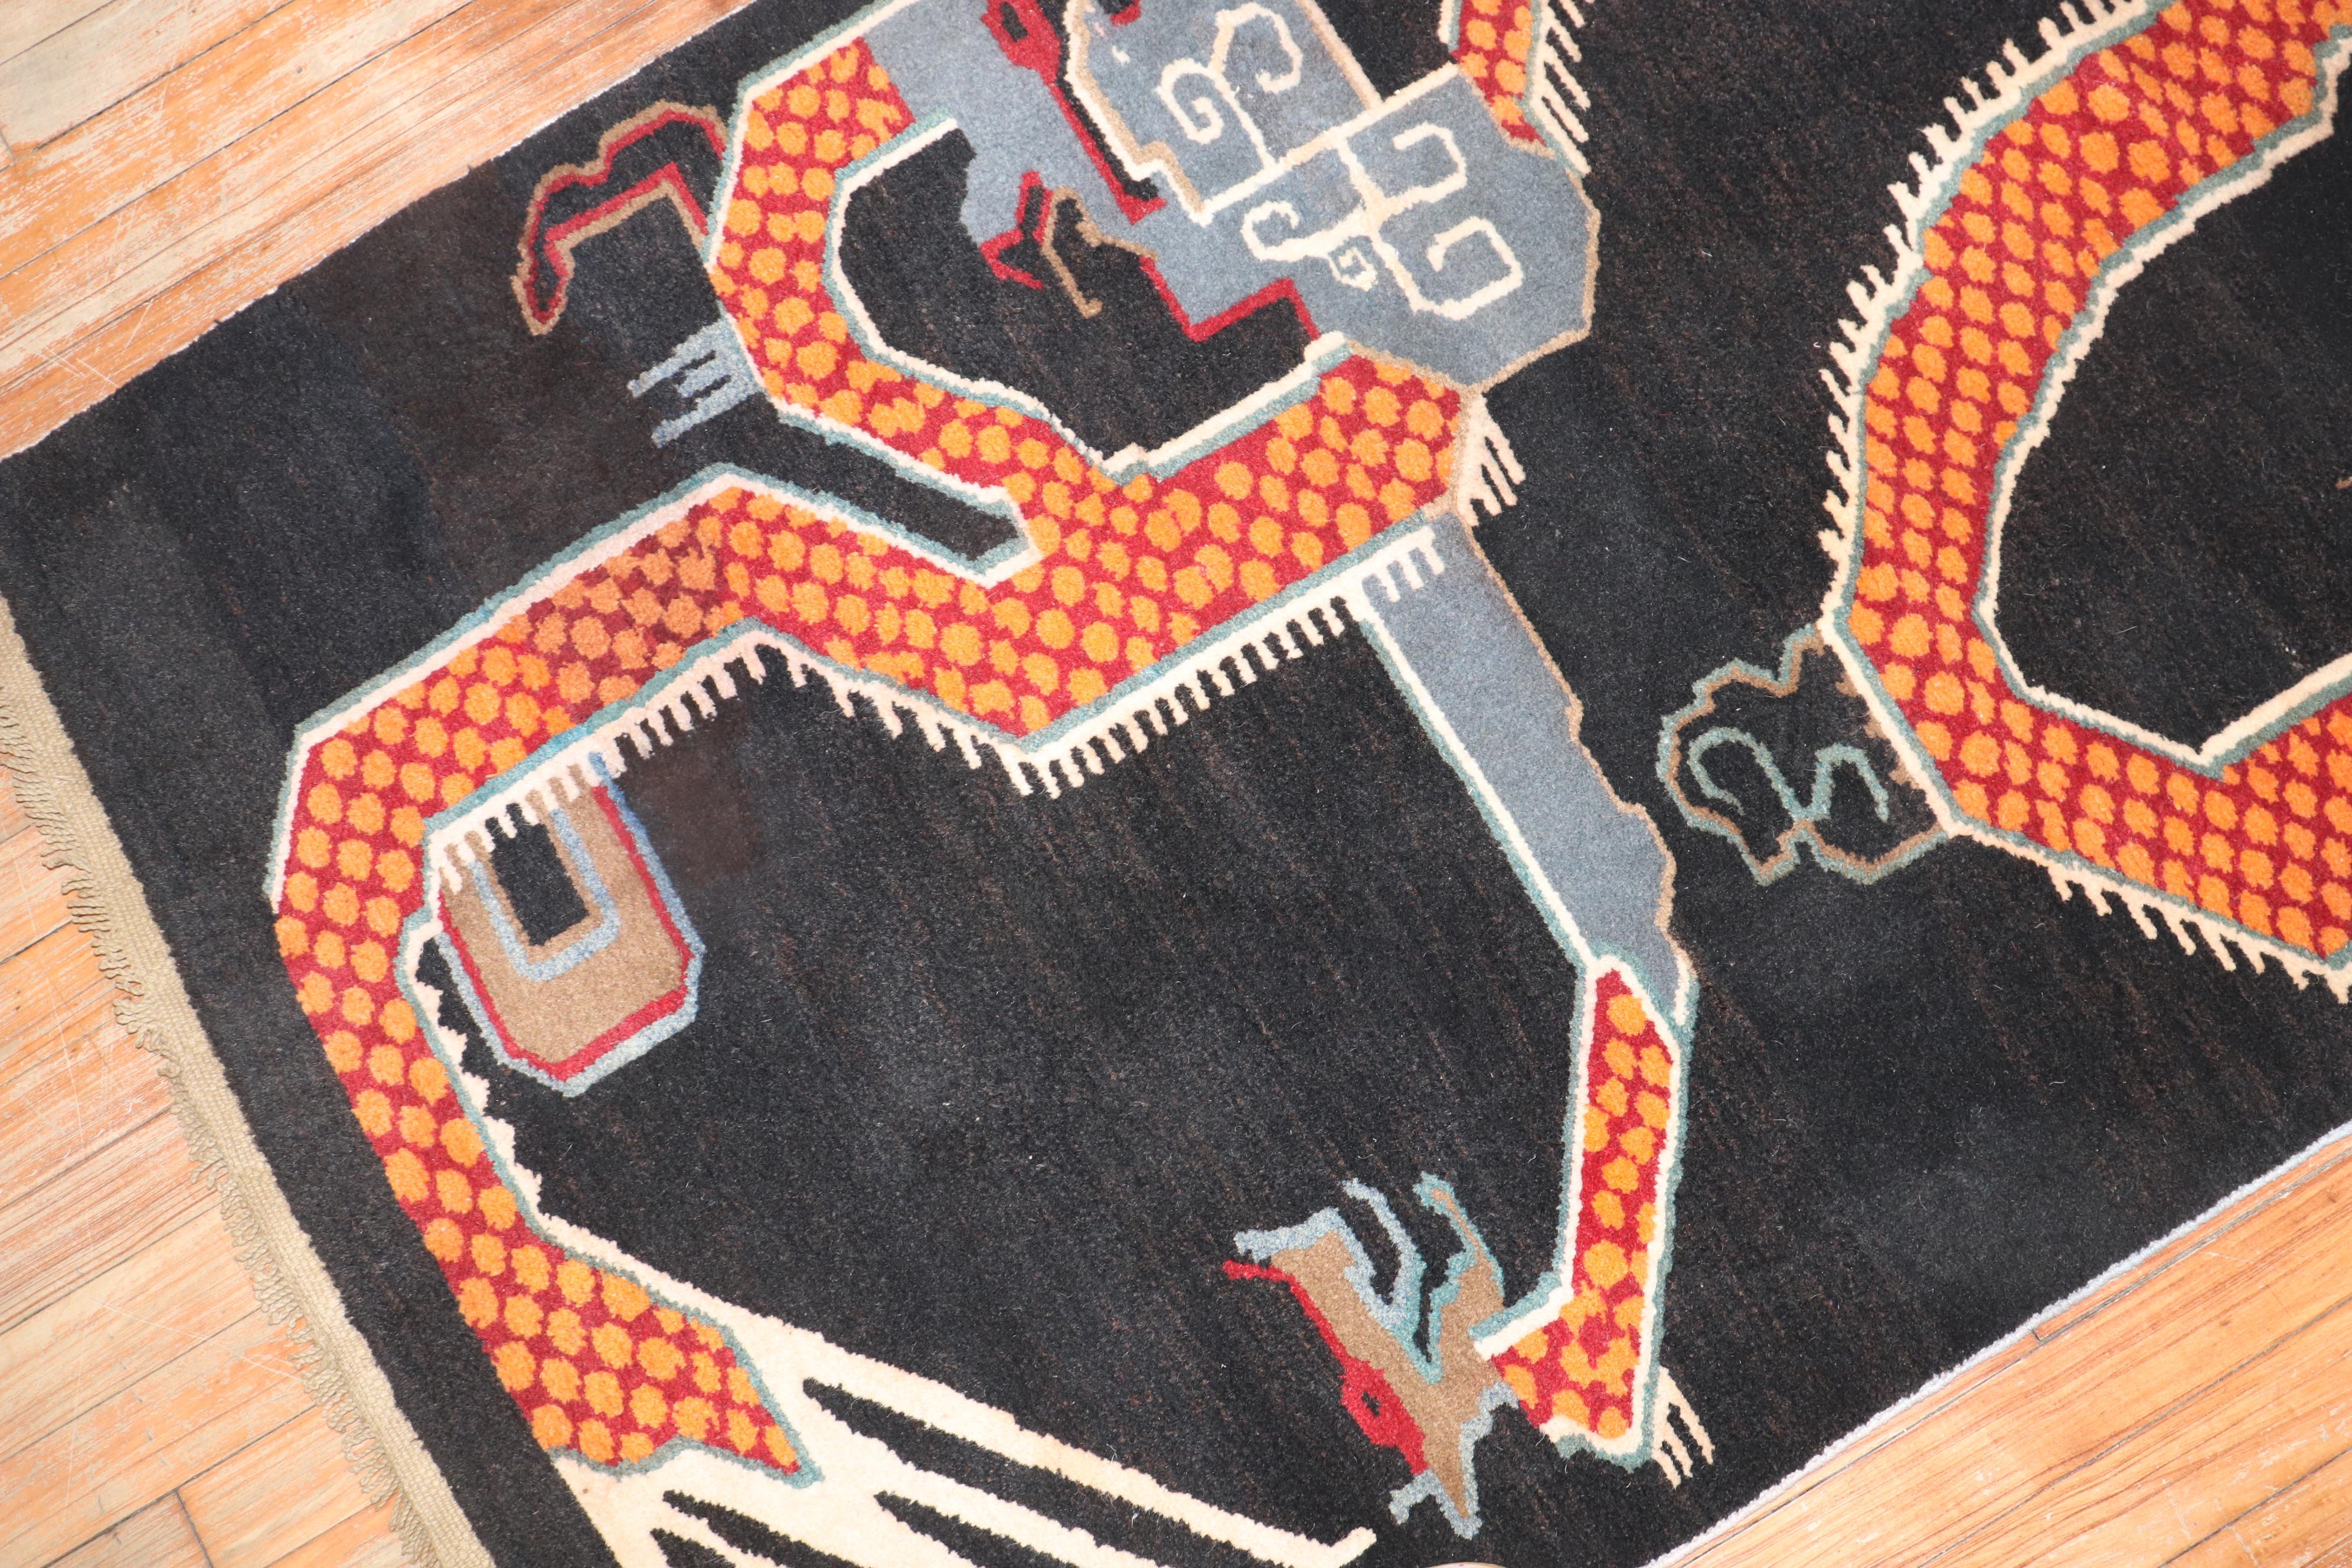 Ein tibetischer Teppich aus dem 3. Quartal des 20. Jahrhunderts, der einen großen orangefarbenen Drachen darstellt

Maße: 3'2